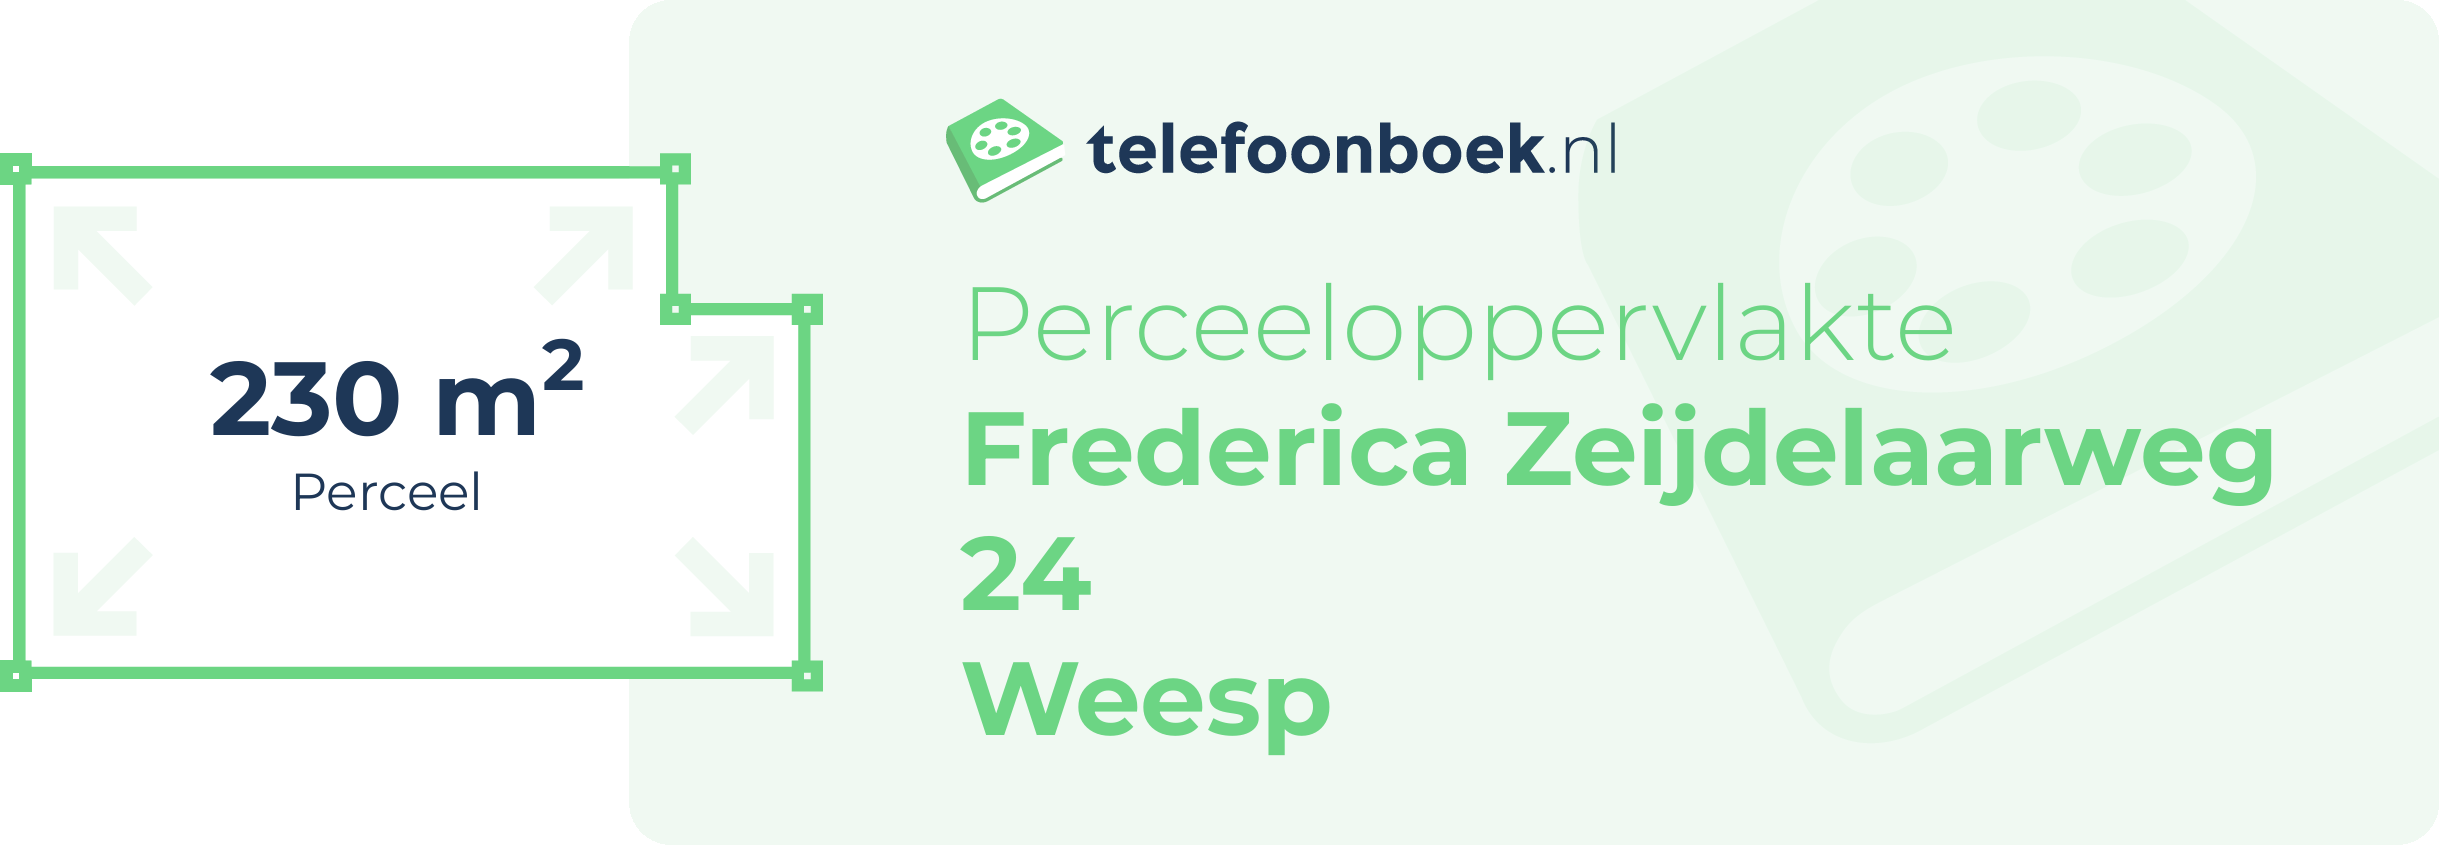 Perceeloppervlakte Frederica Zeijdelaarweg 24 Weesp